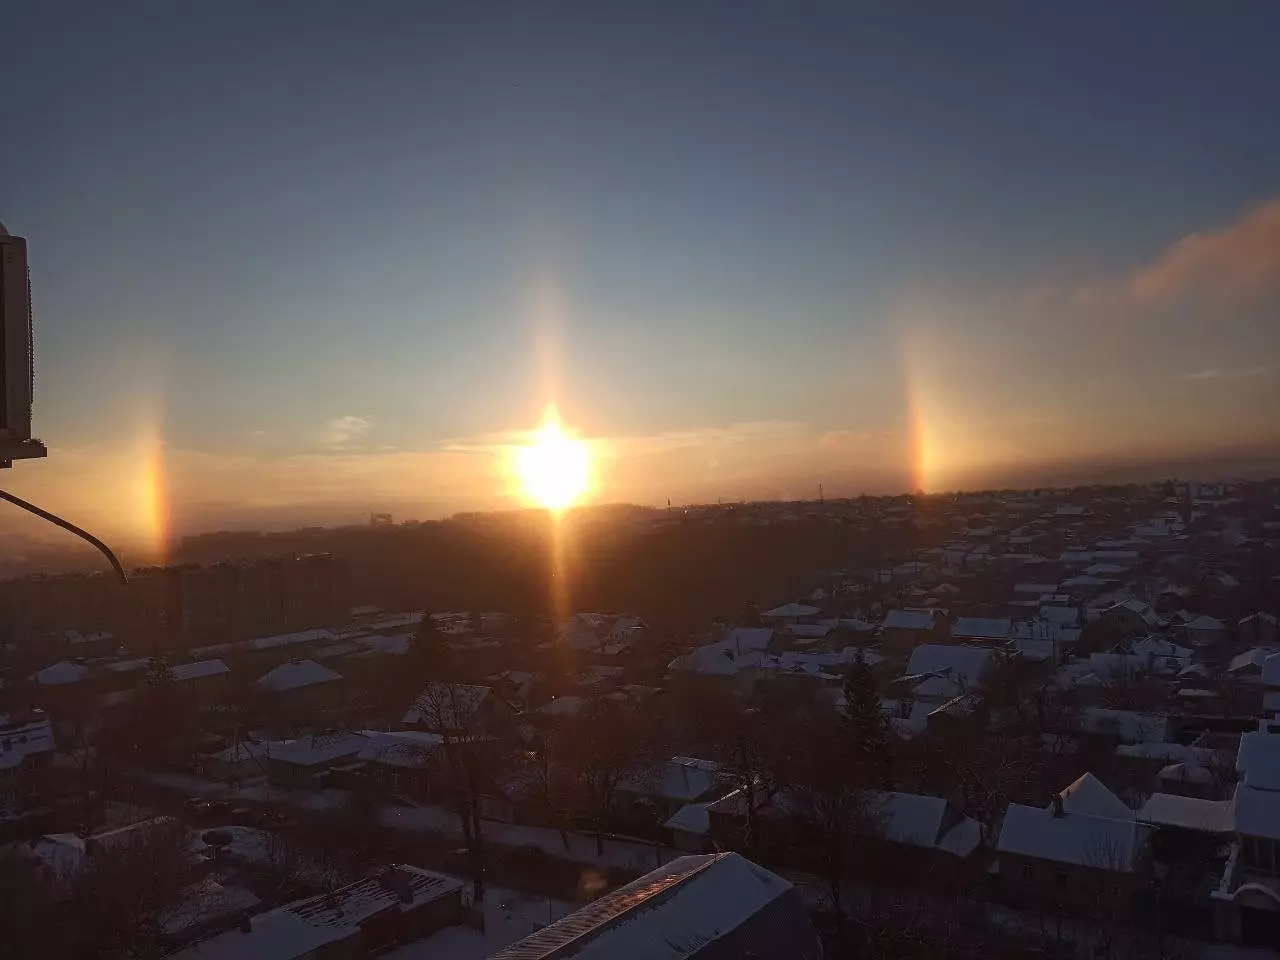 «Волшебное утро»: жителей Ставрополя восхитили три солнца в утреннем небе6